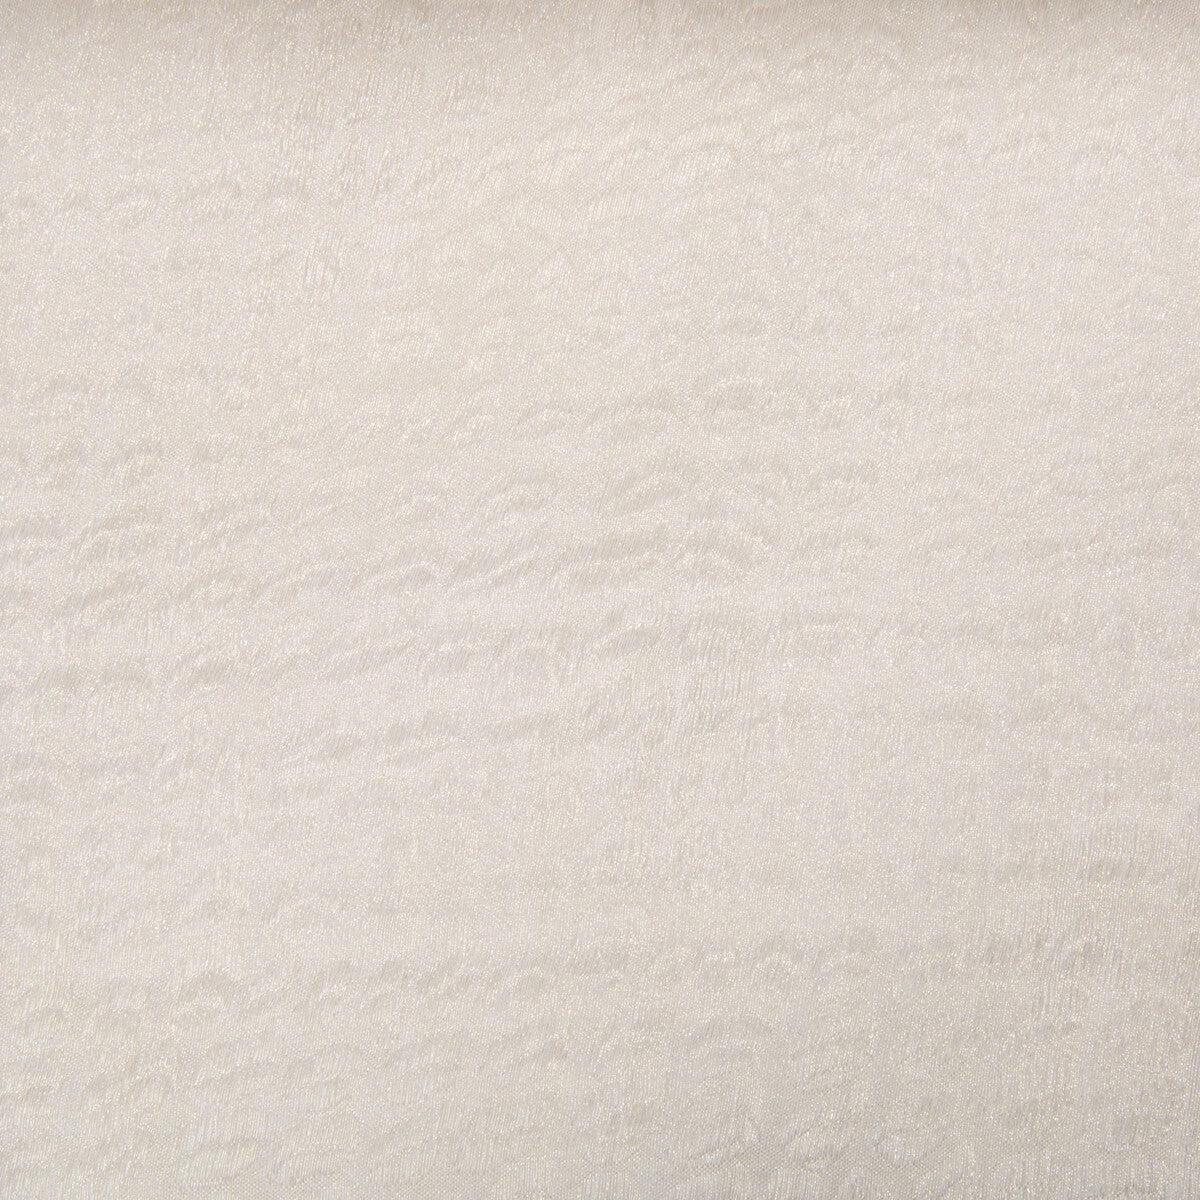 Kravet Basics fabric in 4294-116 color - pattern 4294.116.0 - by Kravet Basics